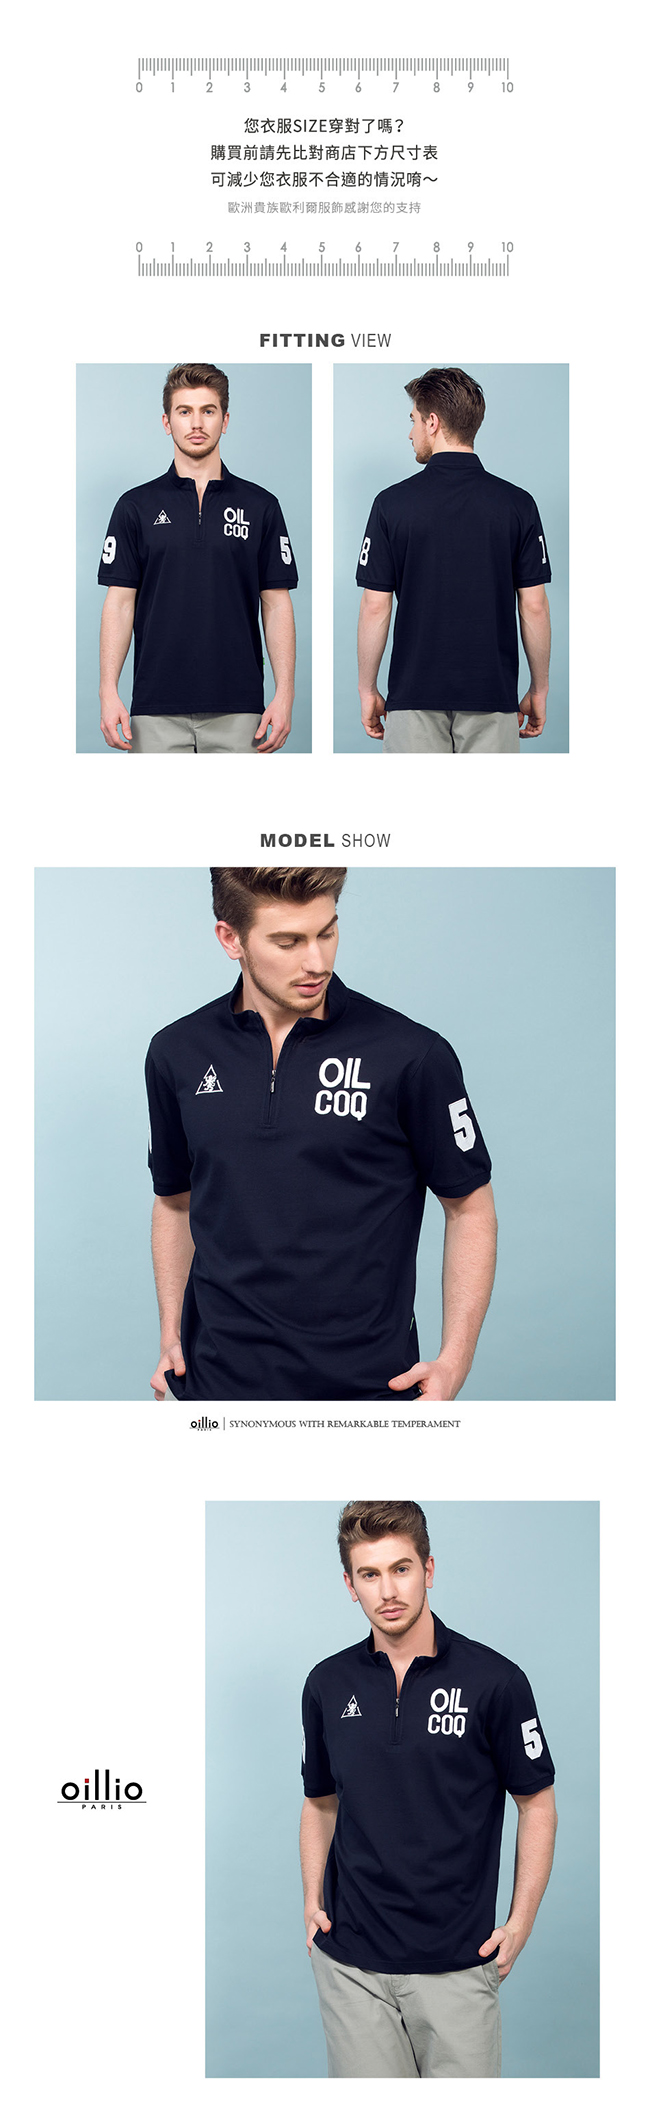 oillio歐洲貴族 短袖立領T恤 精緻品牌刺繡 舒適棉質衣料 丈青色